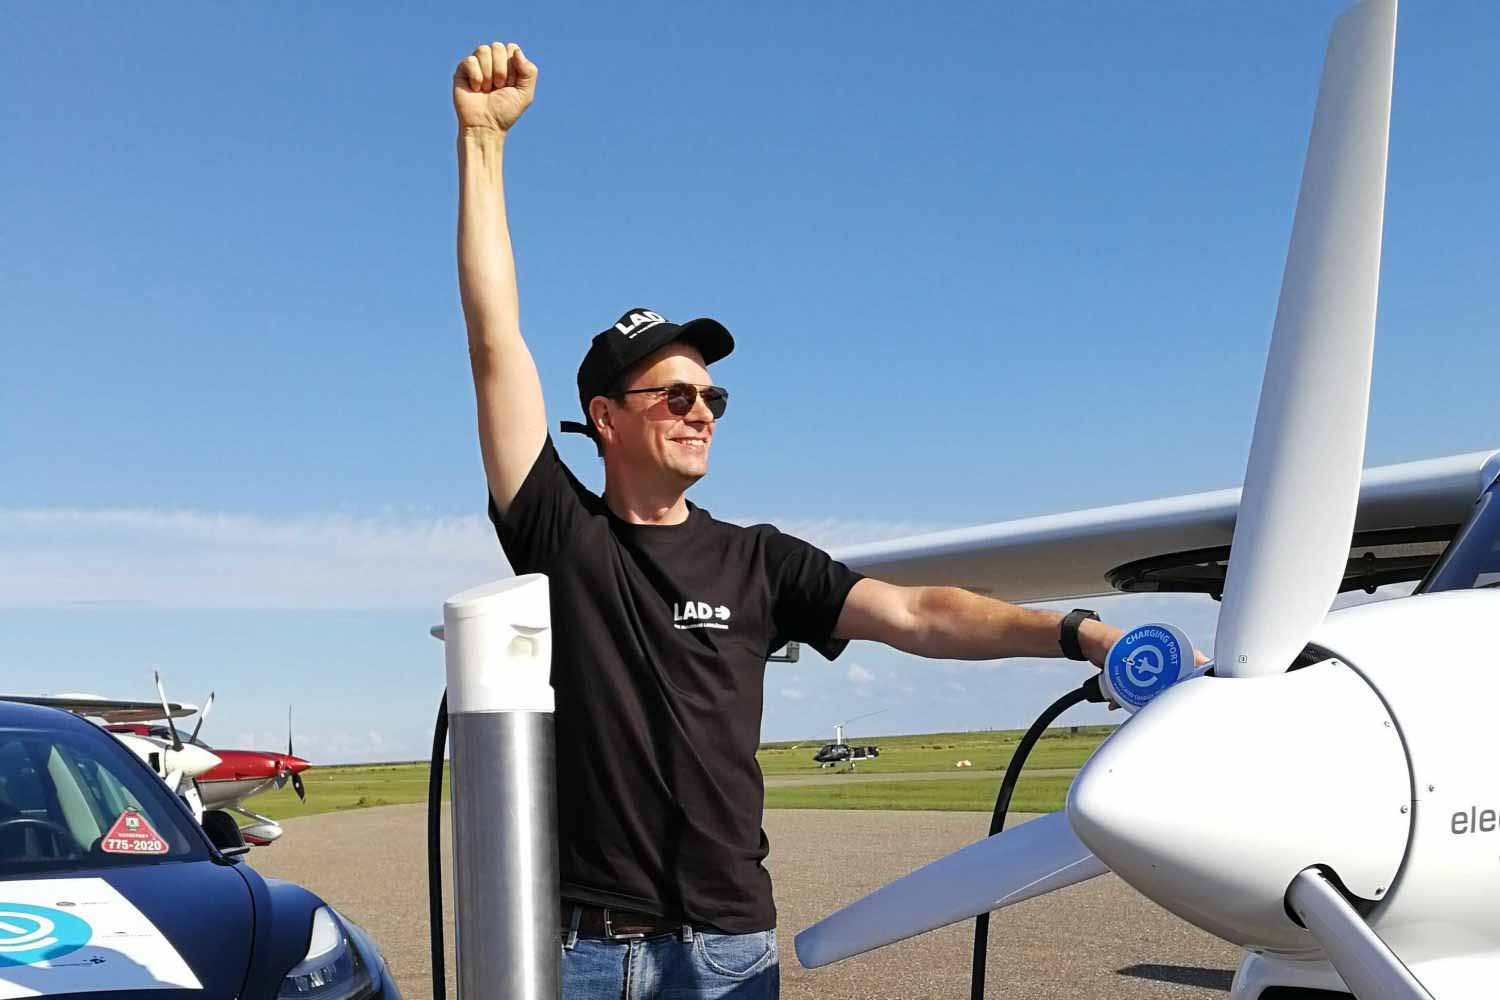 Dennis Schulmeyer an Elektroflugzeug mit eigener Ladesäule